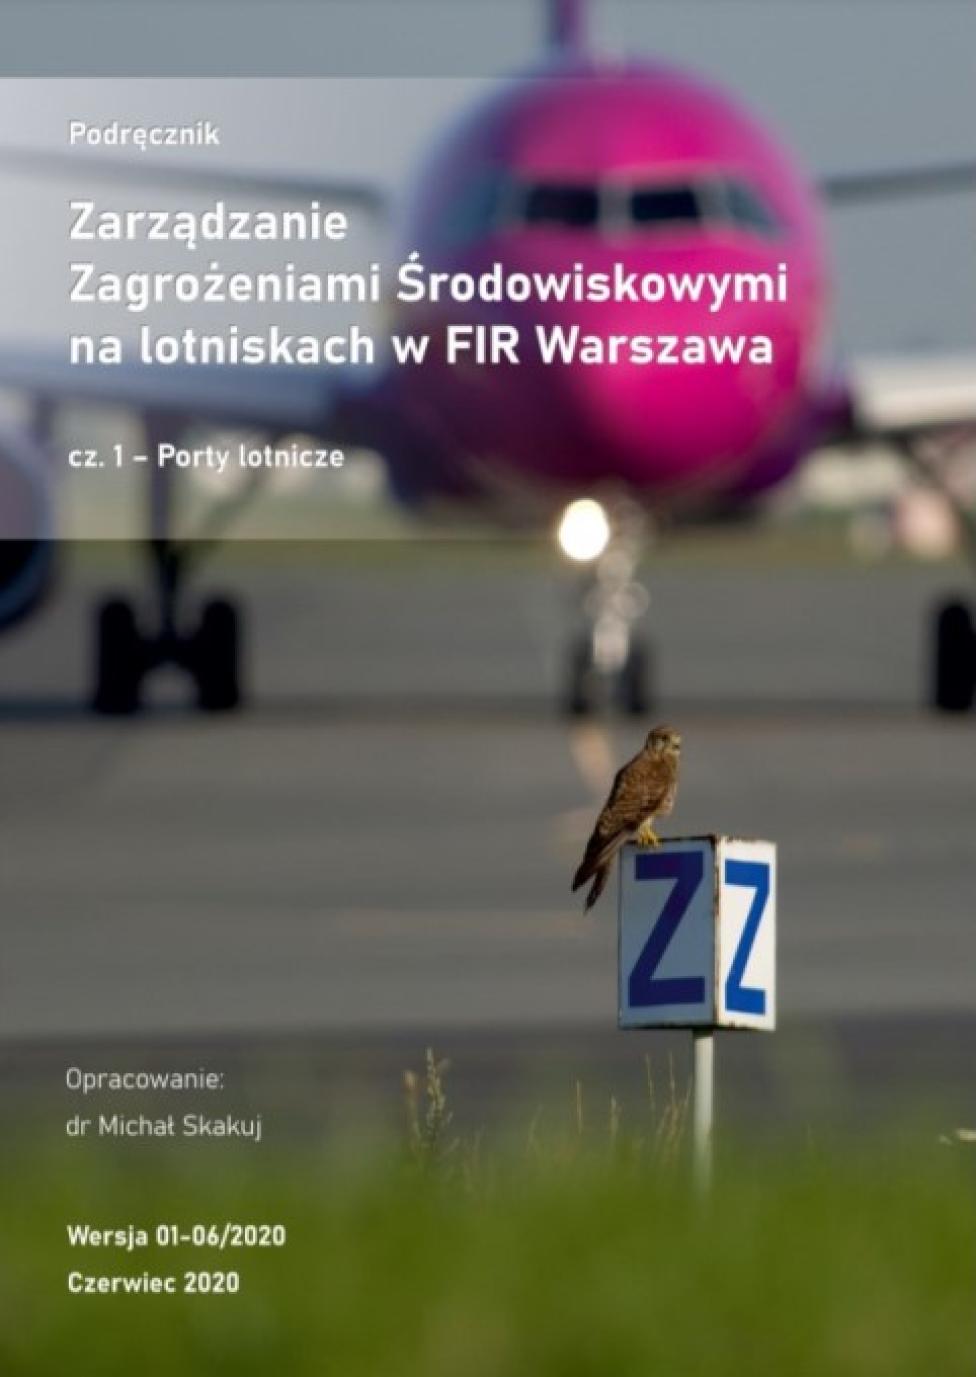 Podręcznik "Zarządzanie Zagrożeniami Środowiskowymi na lotniskach w FIR Warszawa" (fot. ULC)